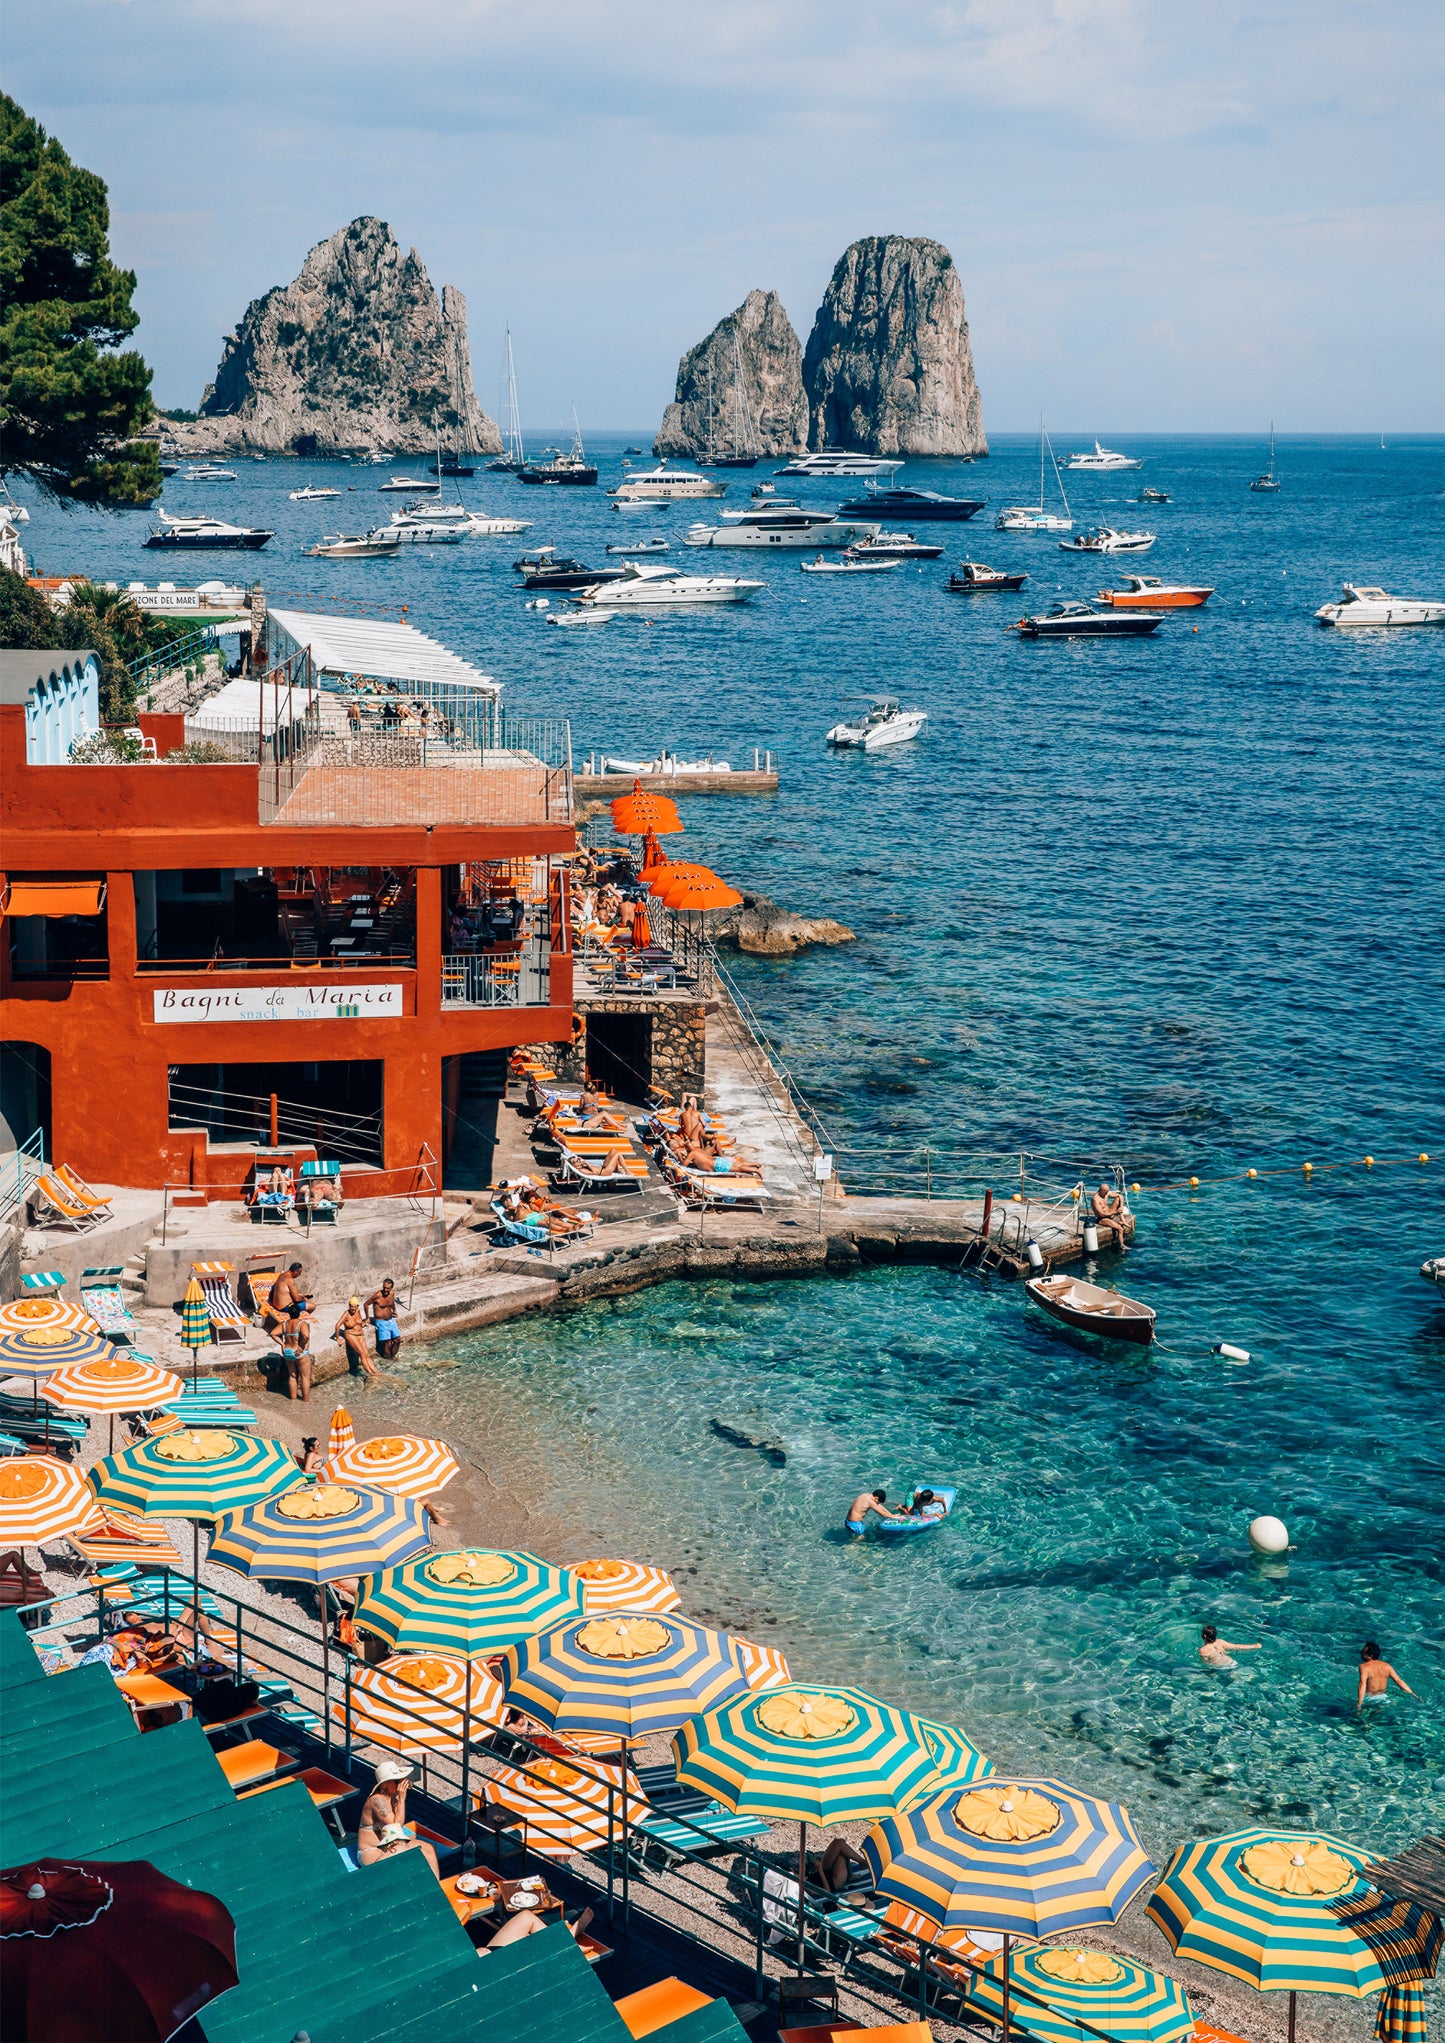 Bagni Internazionali Capri, Italy